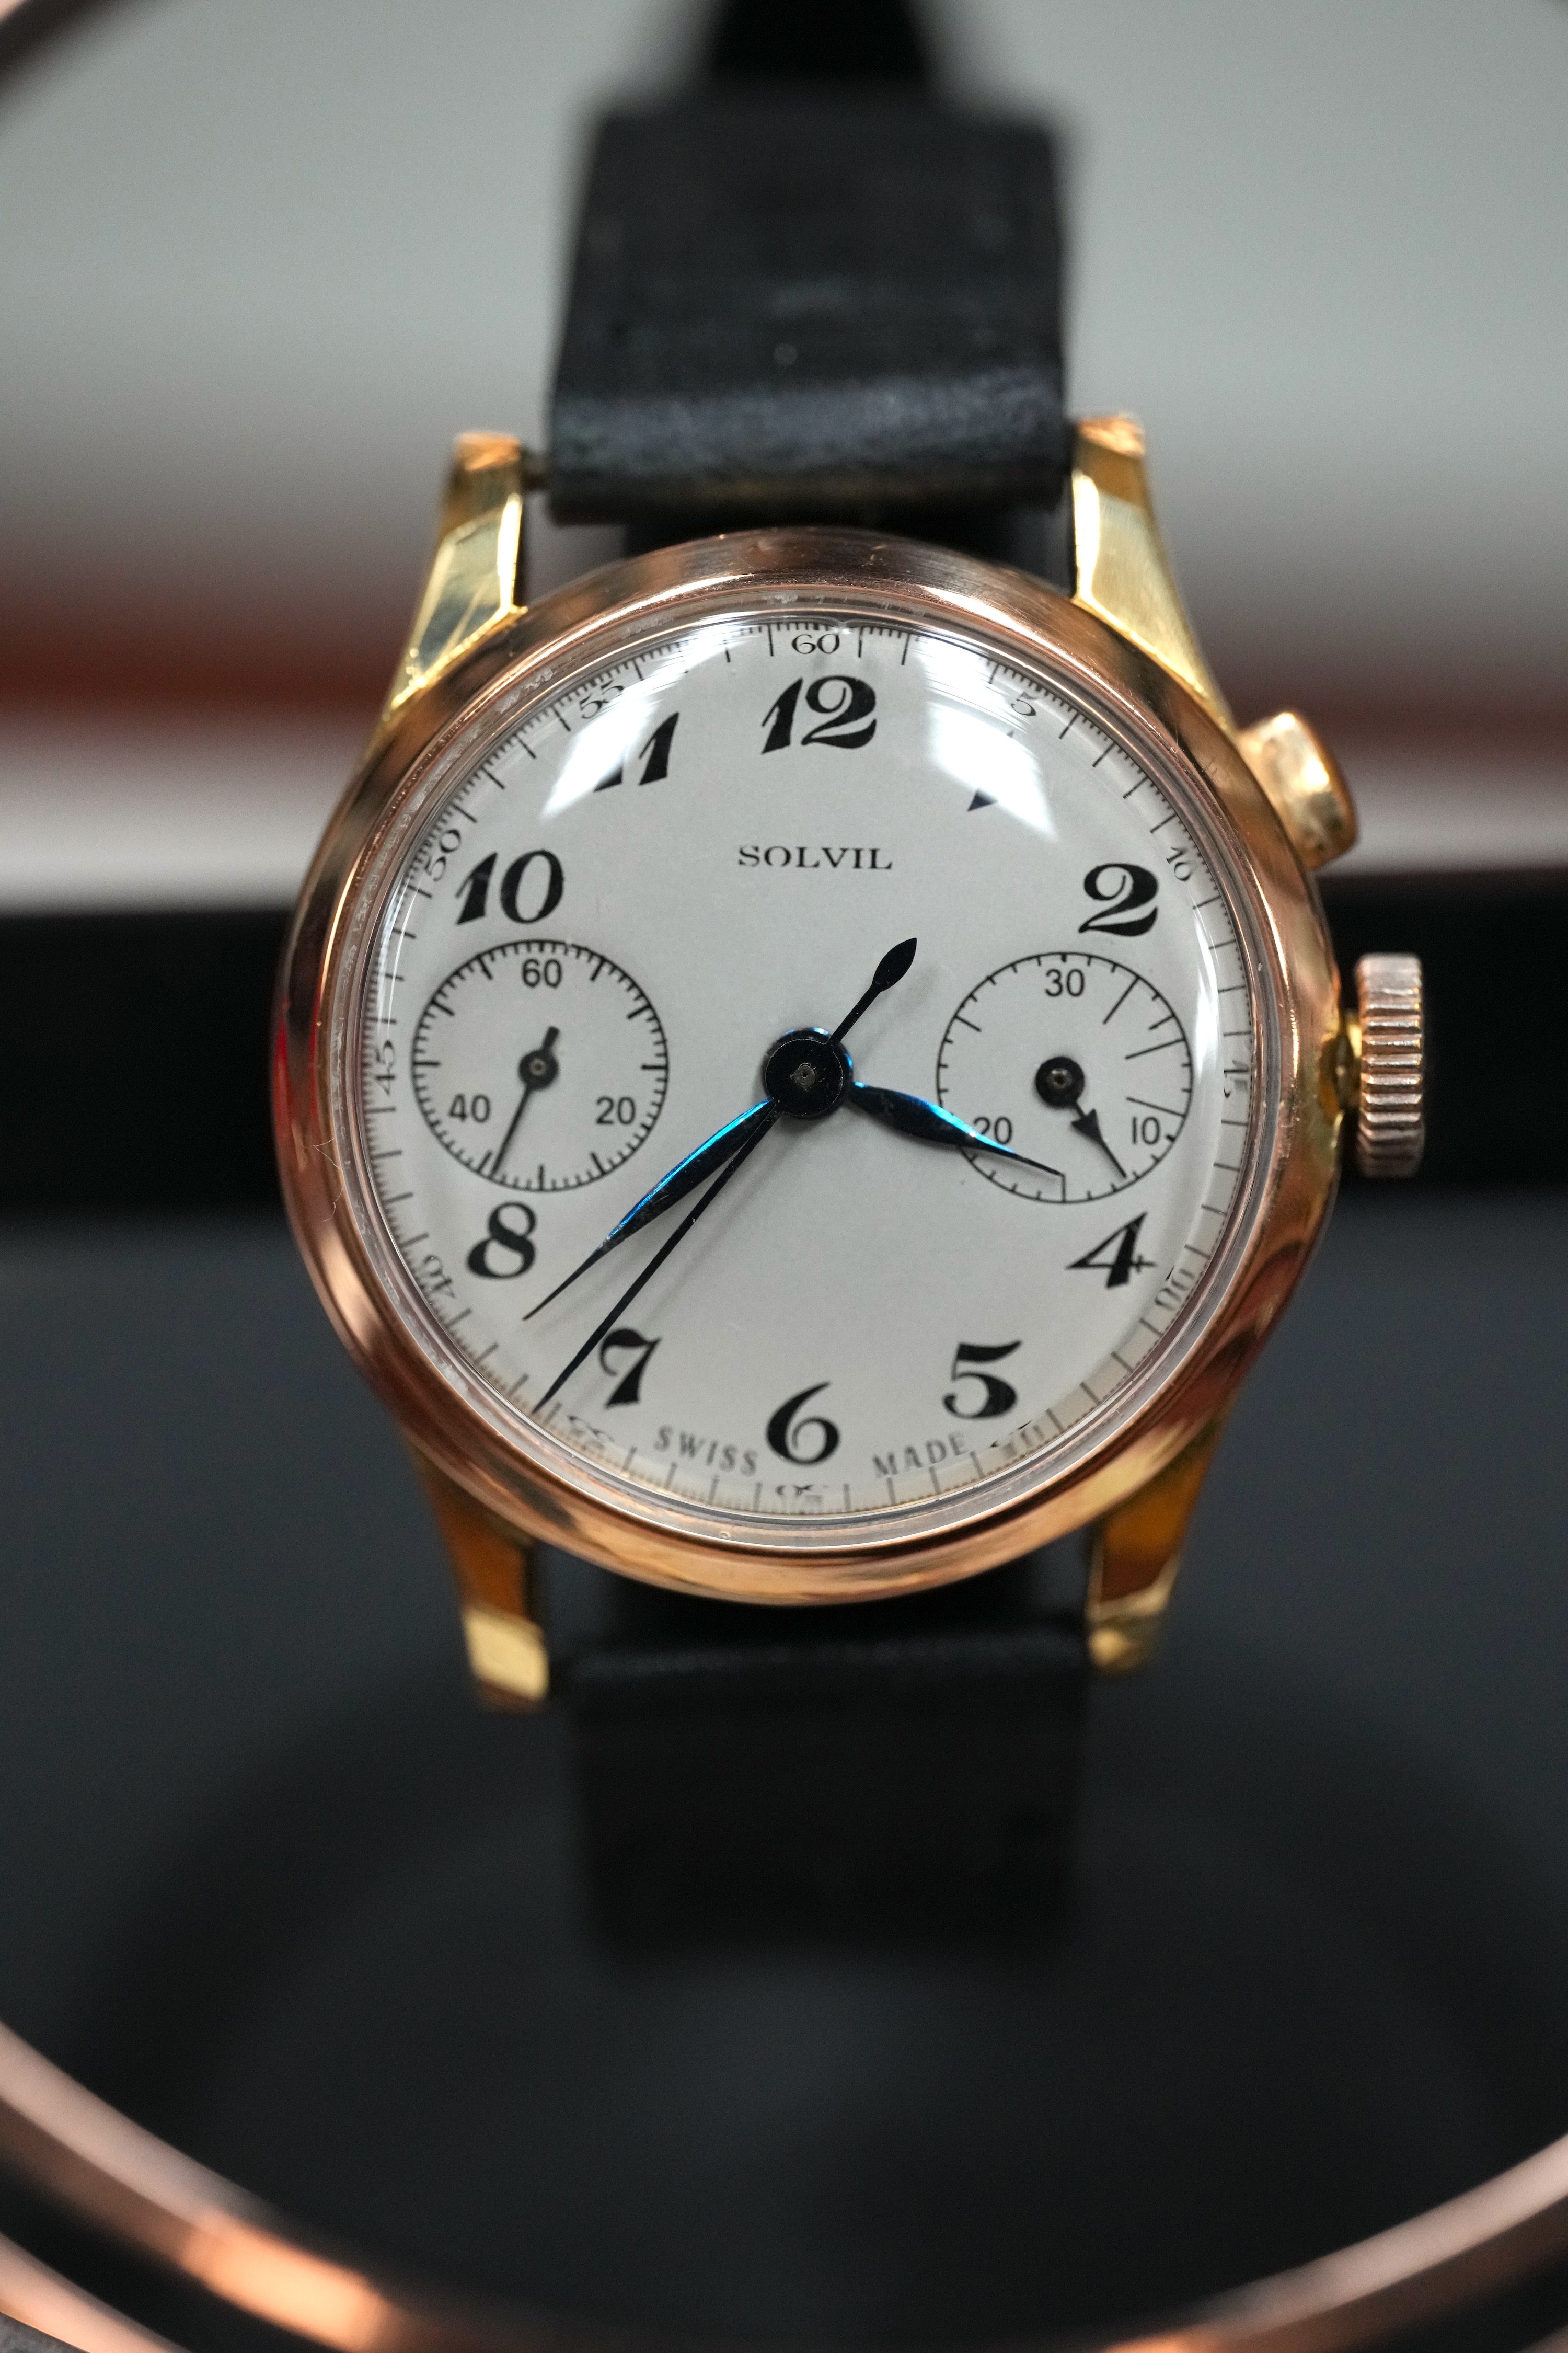 18k gold Solvil chronograph monopusher